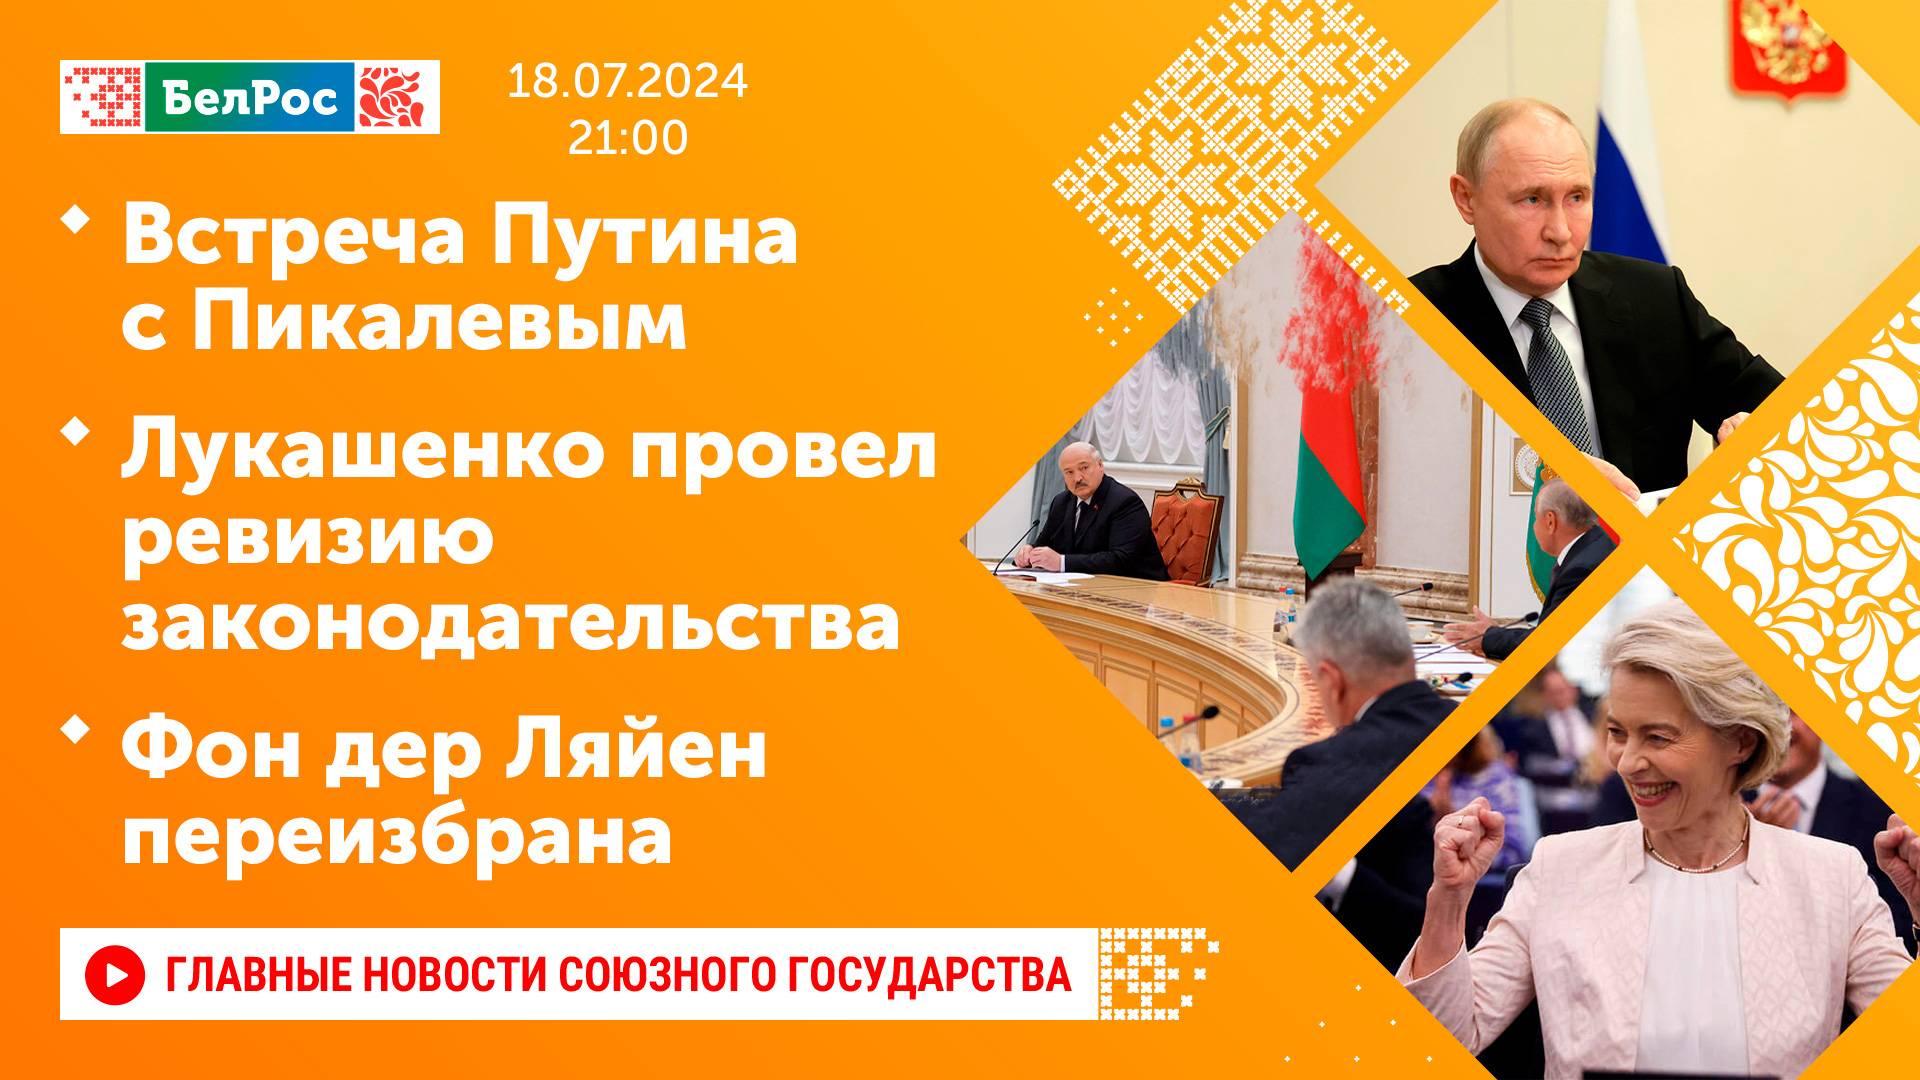 Встреча Путина с Пикалевым / Лукашенко провел ревизию законодательства / Фон дер Ляйен переизбрана